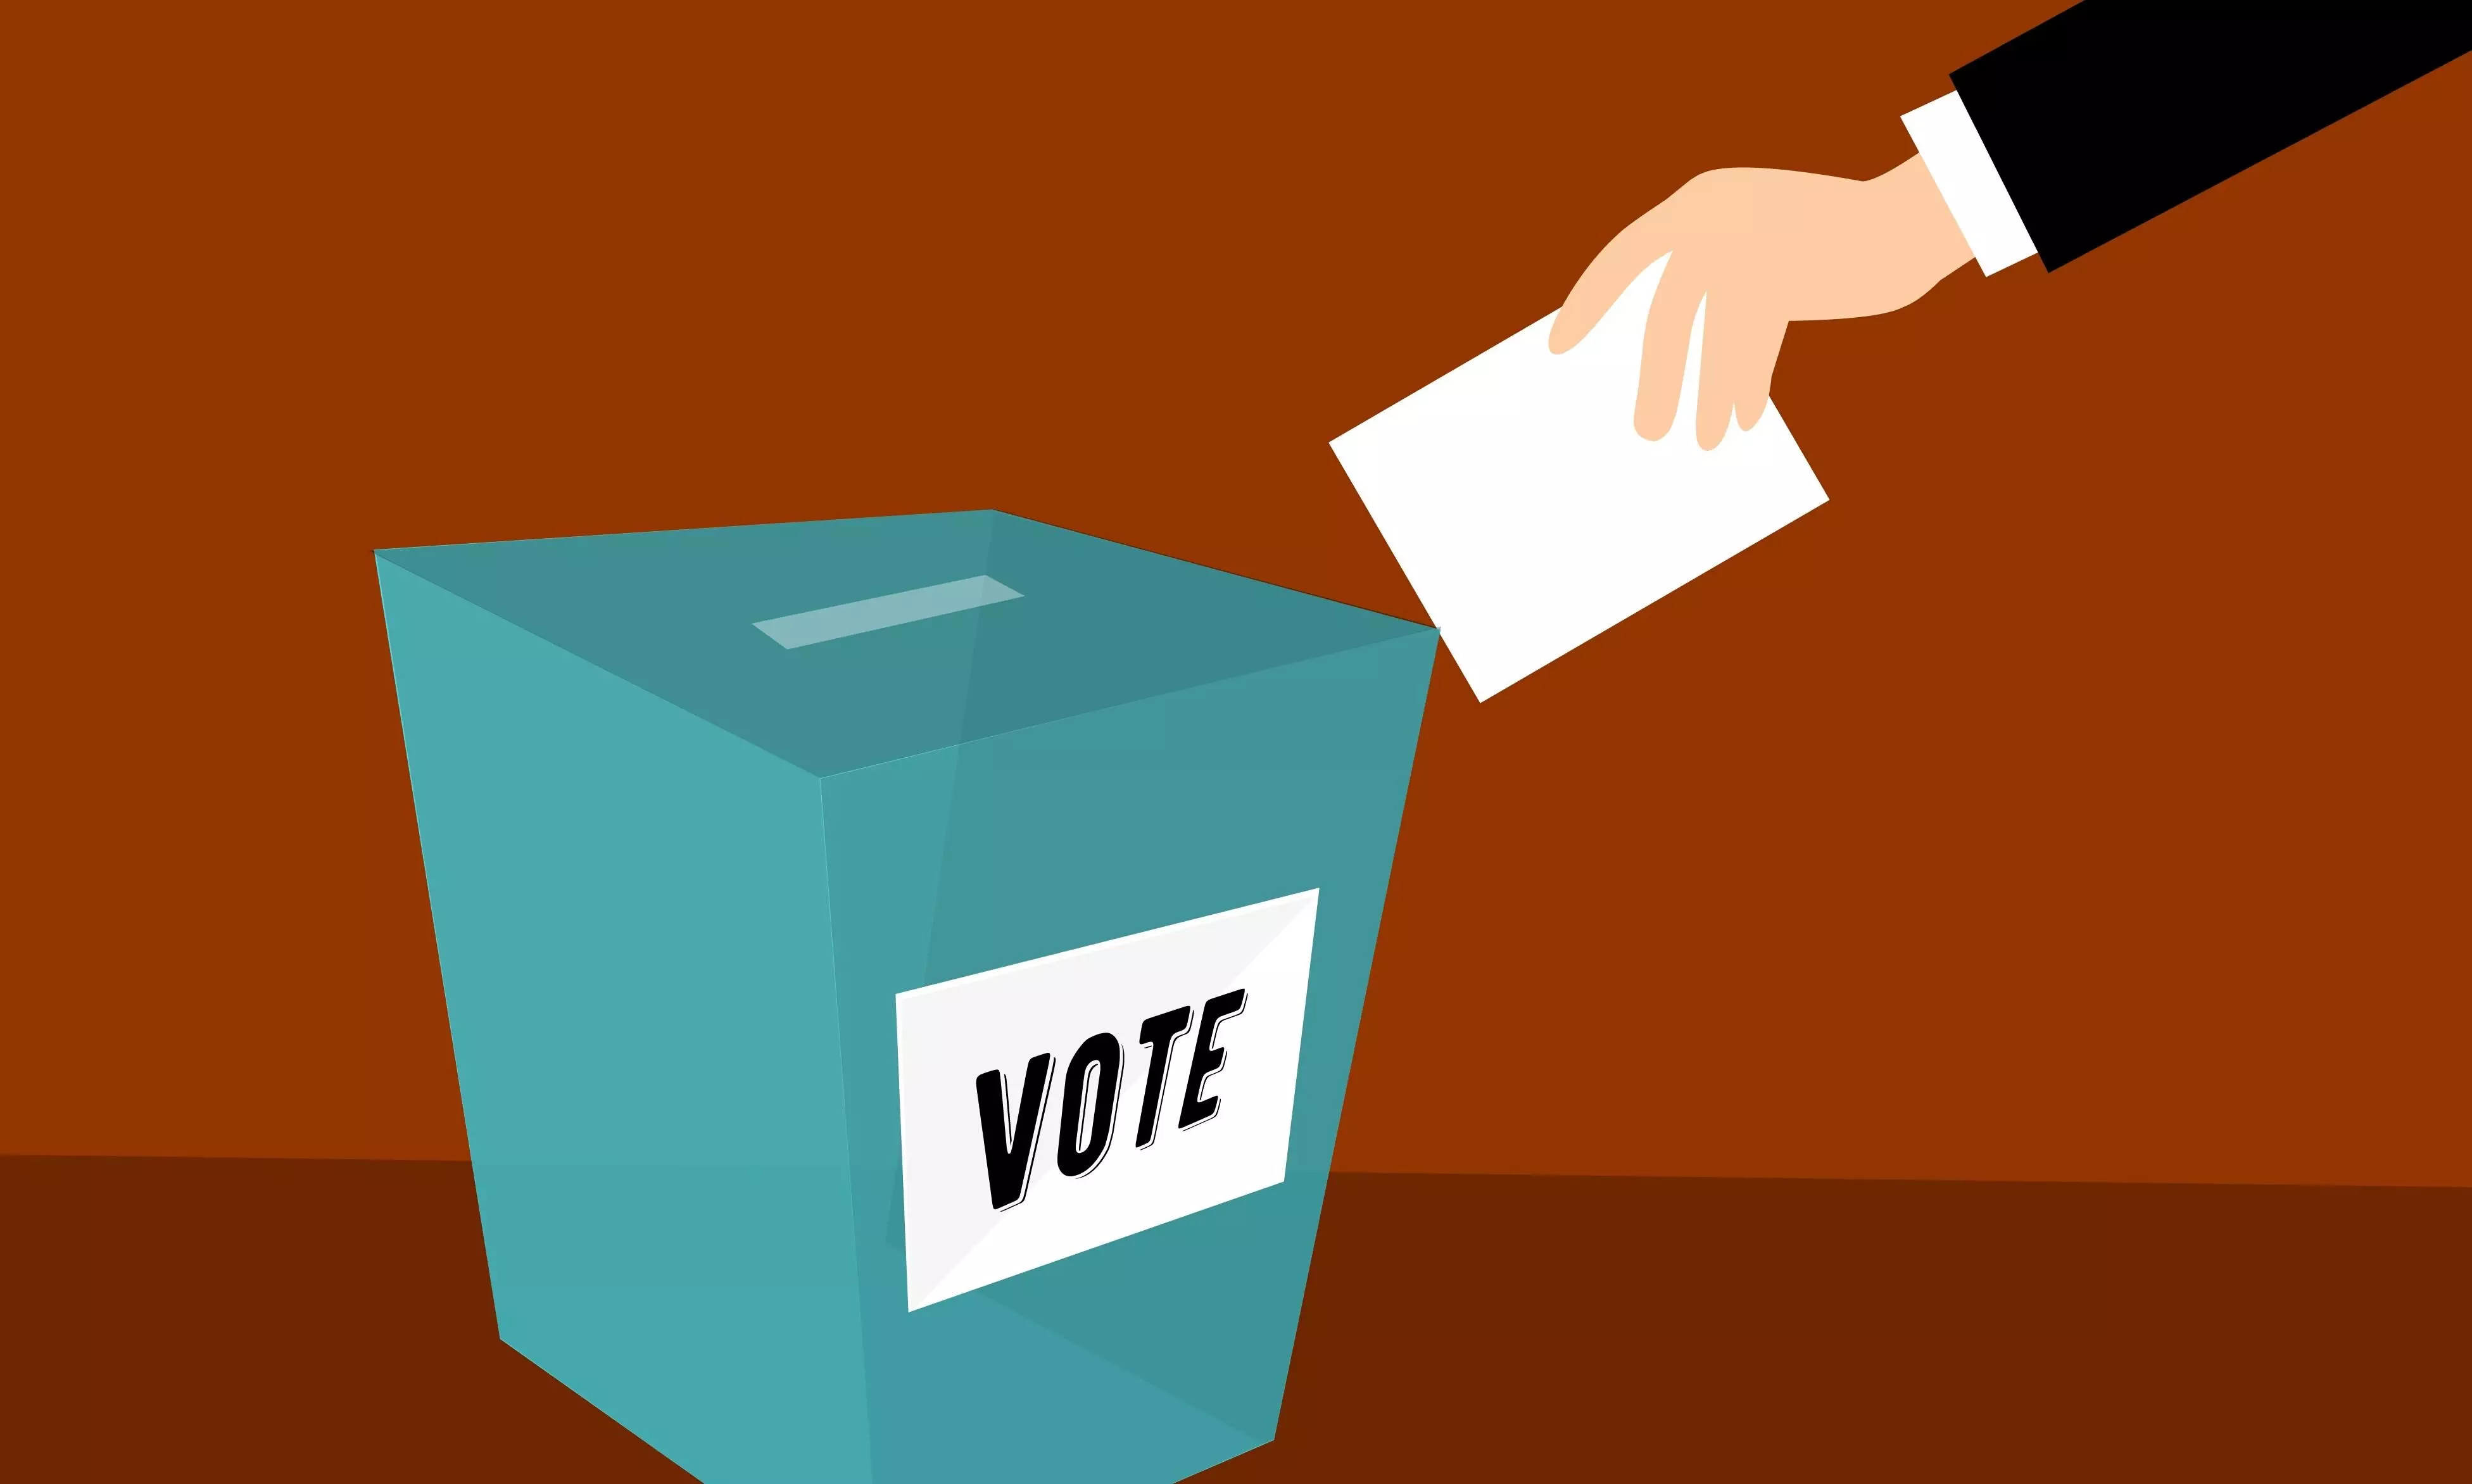 उत्तर प्रदेश: ब्लॉक प्रमुख पदों के लिए 10 जुलाई को पड़ेंगे वोट